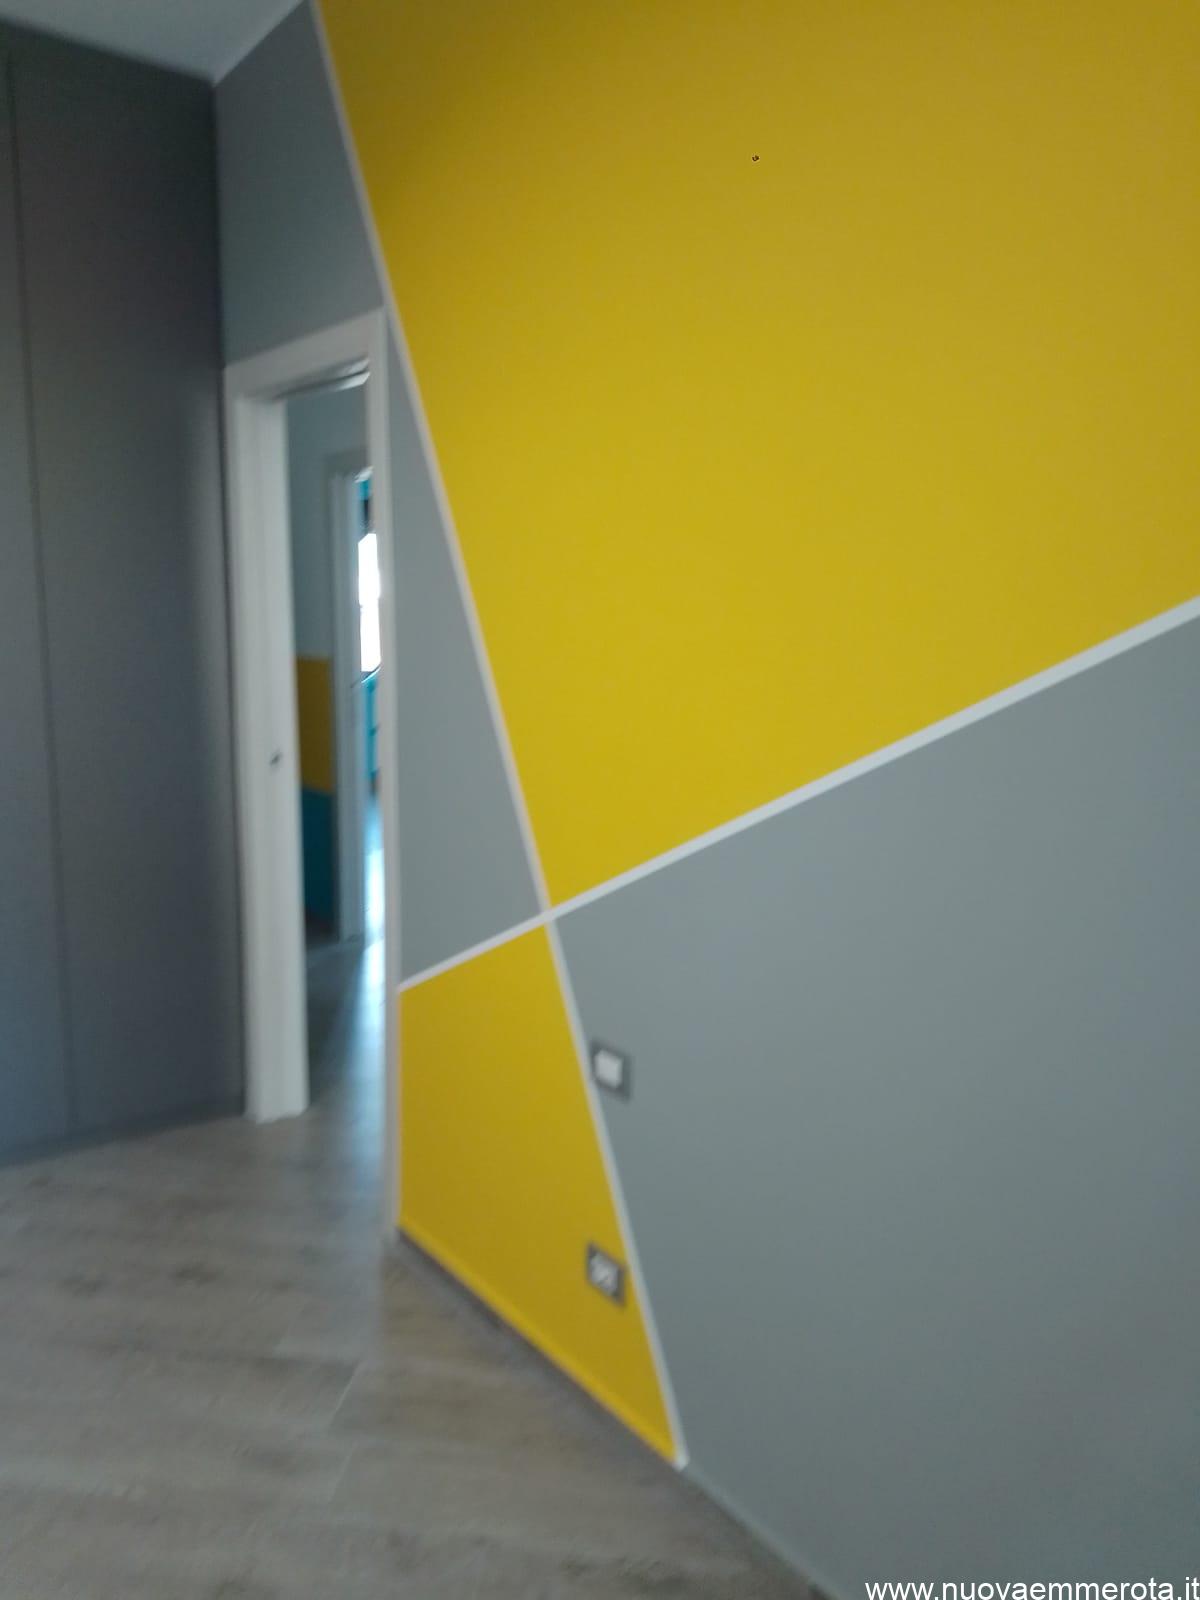 Armadio installato in ambiente cromatico con pareti color crigio e giallo.